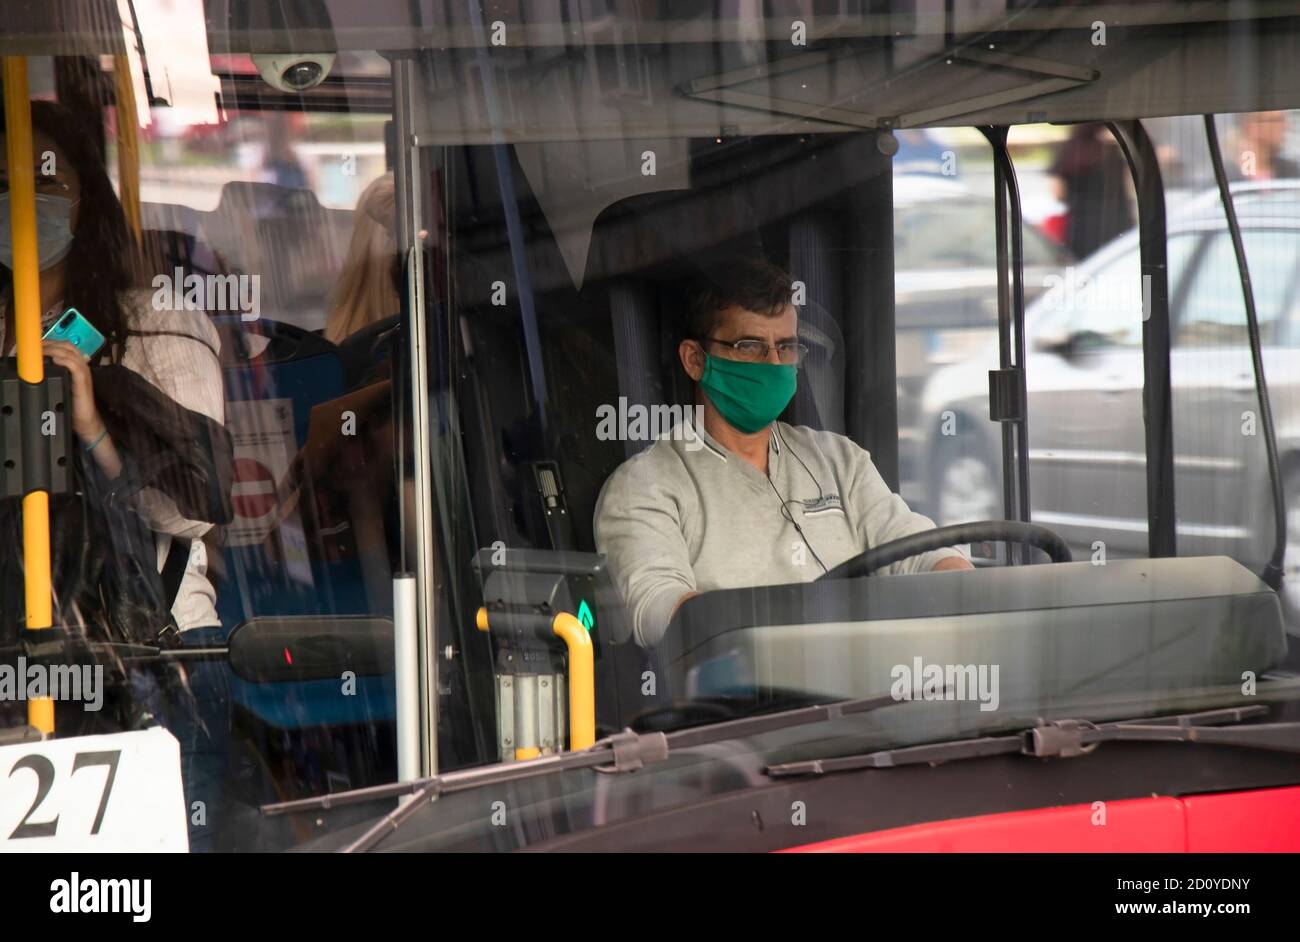 Belgrade, Serbie - 02 octobre 2020 : conducteur portant un masque chirurgical au volant d'un bus urbain avec des passagers, de l'extérieur à travers la vitre avant Banque D'Images